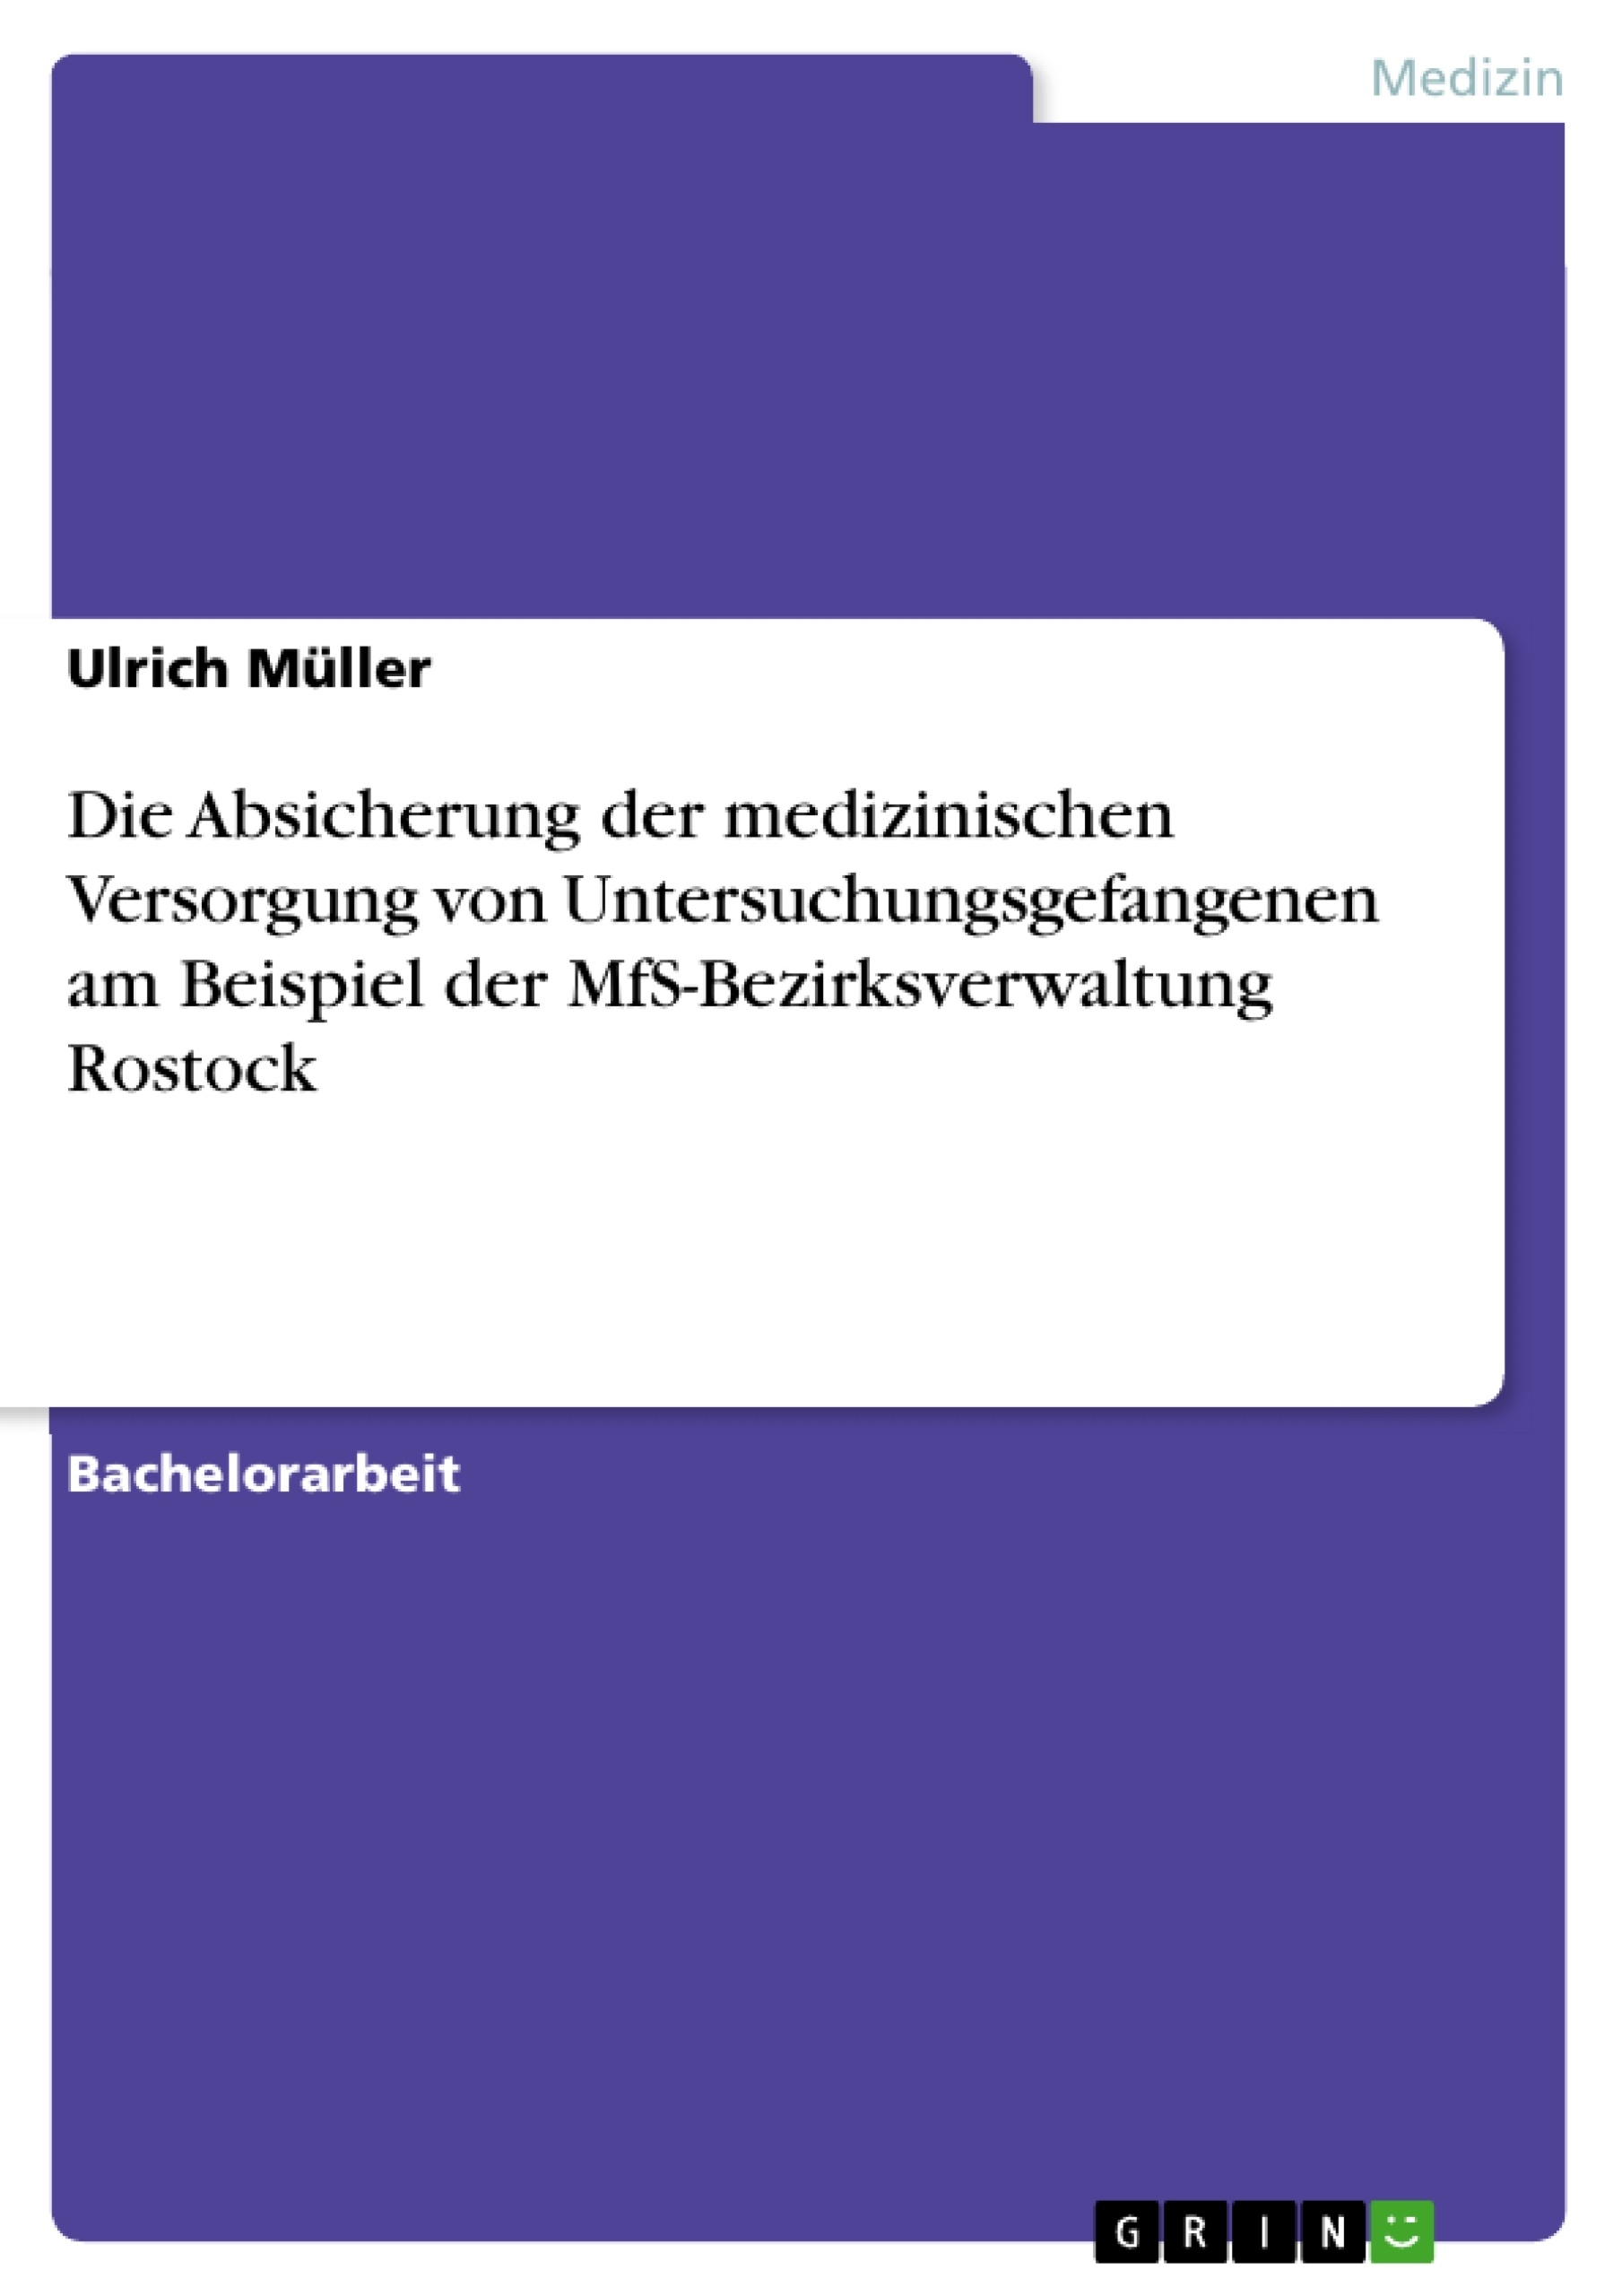 Título: Die Absicherung der medizinischen Versorgung von Untersuchungsgefangenen am Beispiel der MfS-Bezirksverwaltung Rostock